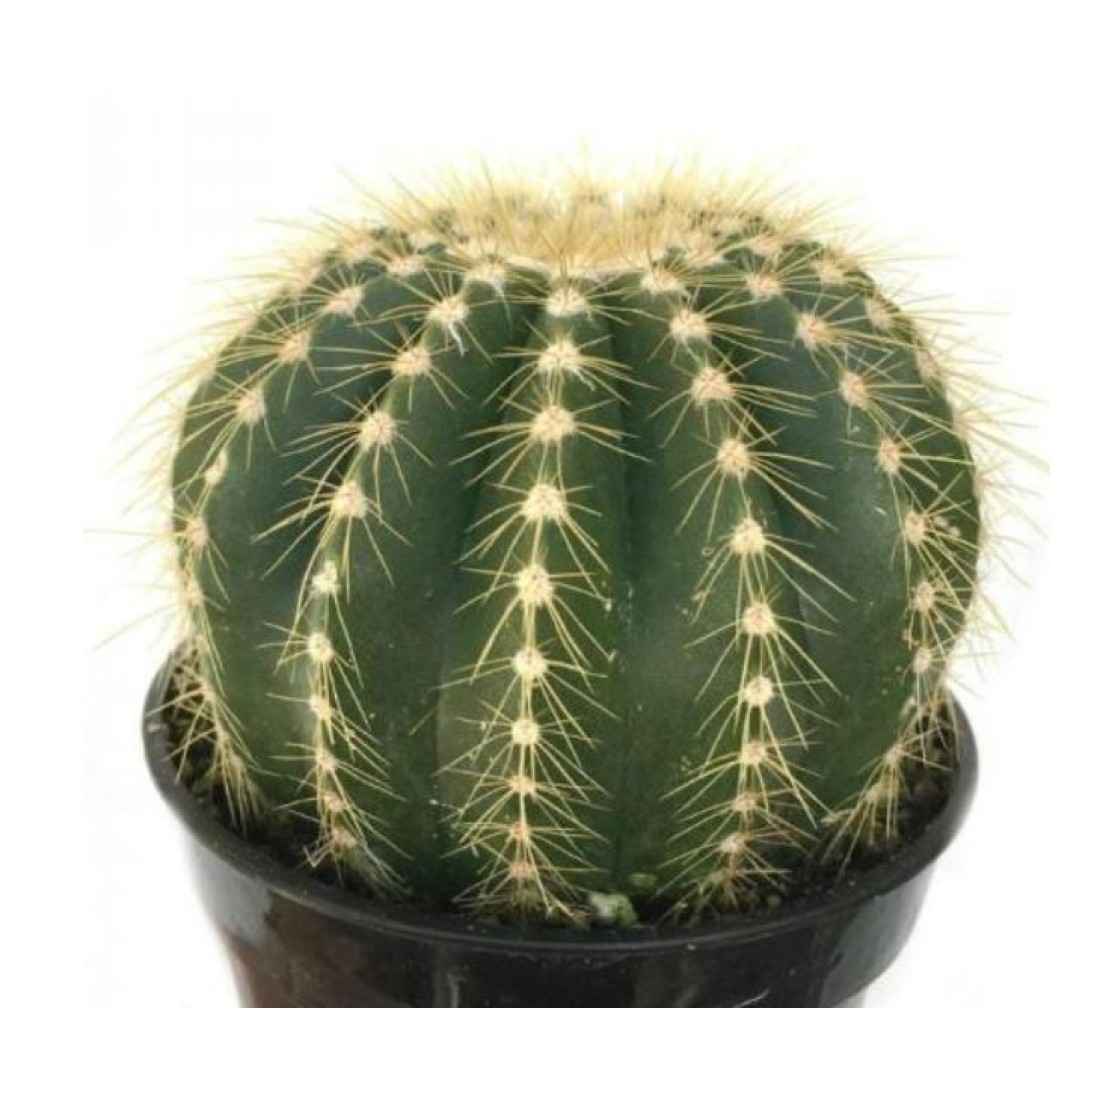 Notocactus magnificus ‘Balloon Cactus’ live plant